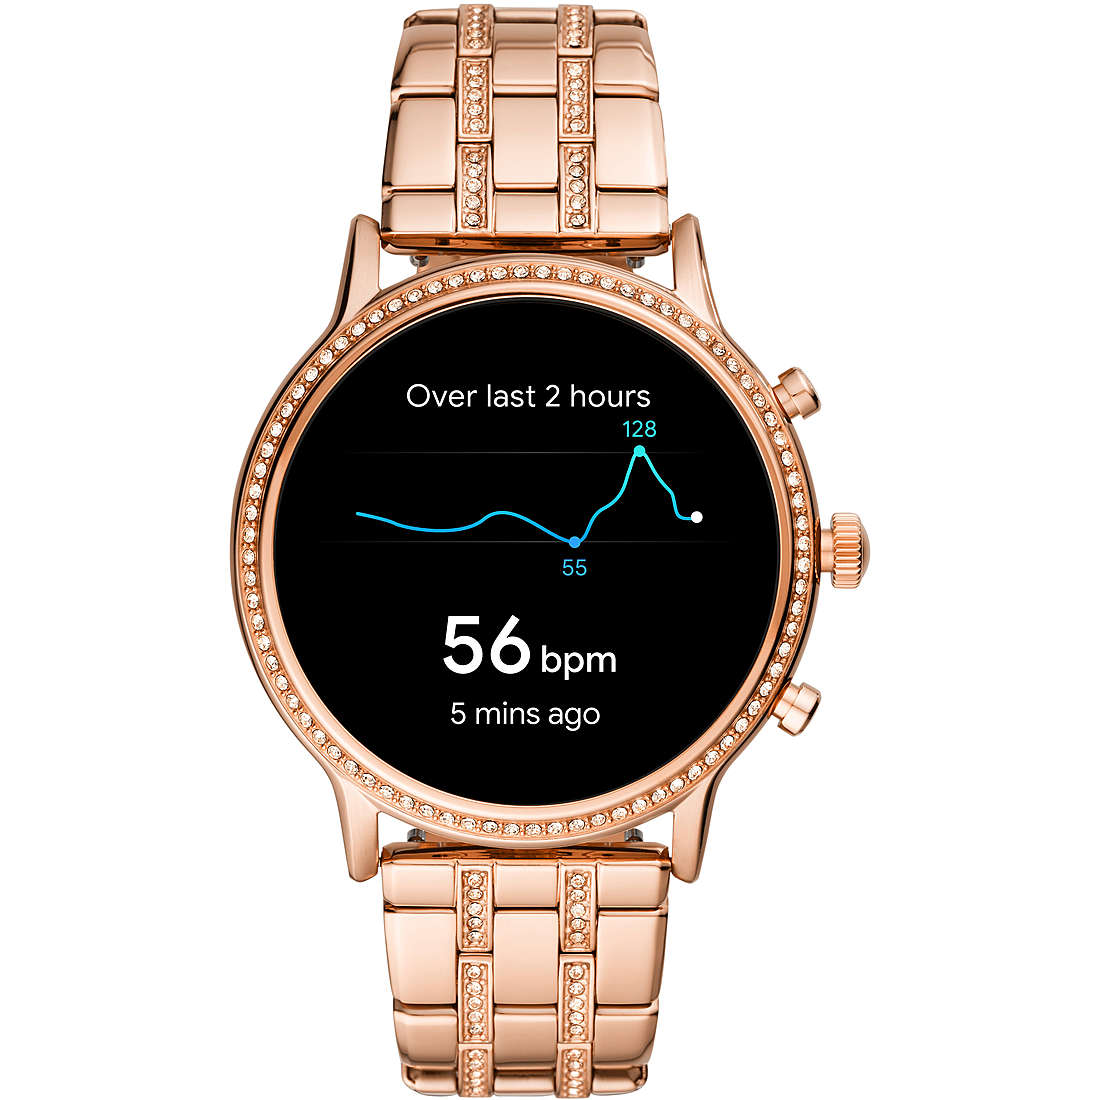 Uhr Smartwatch frau Fossil Spring 2020 FTW6035